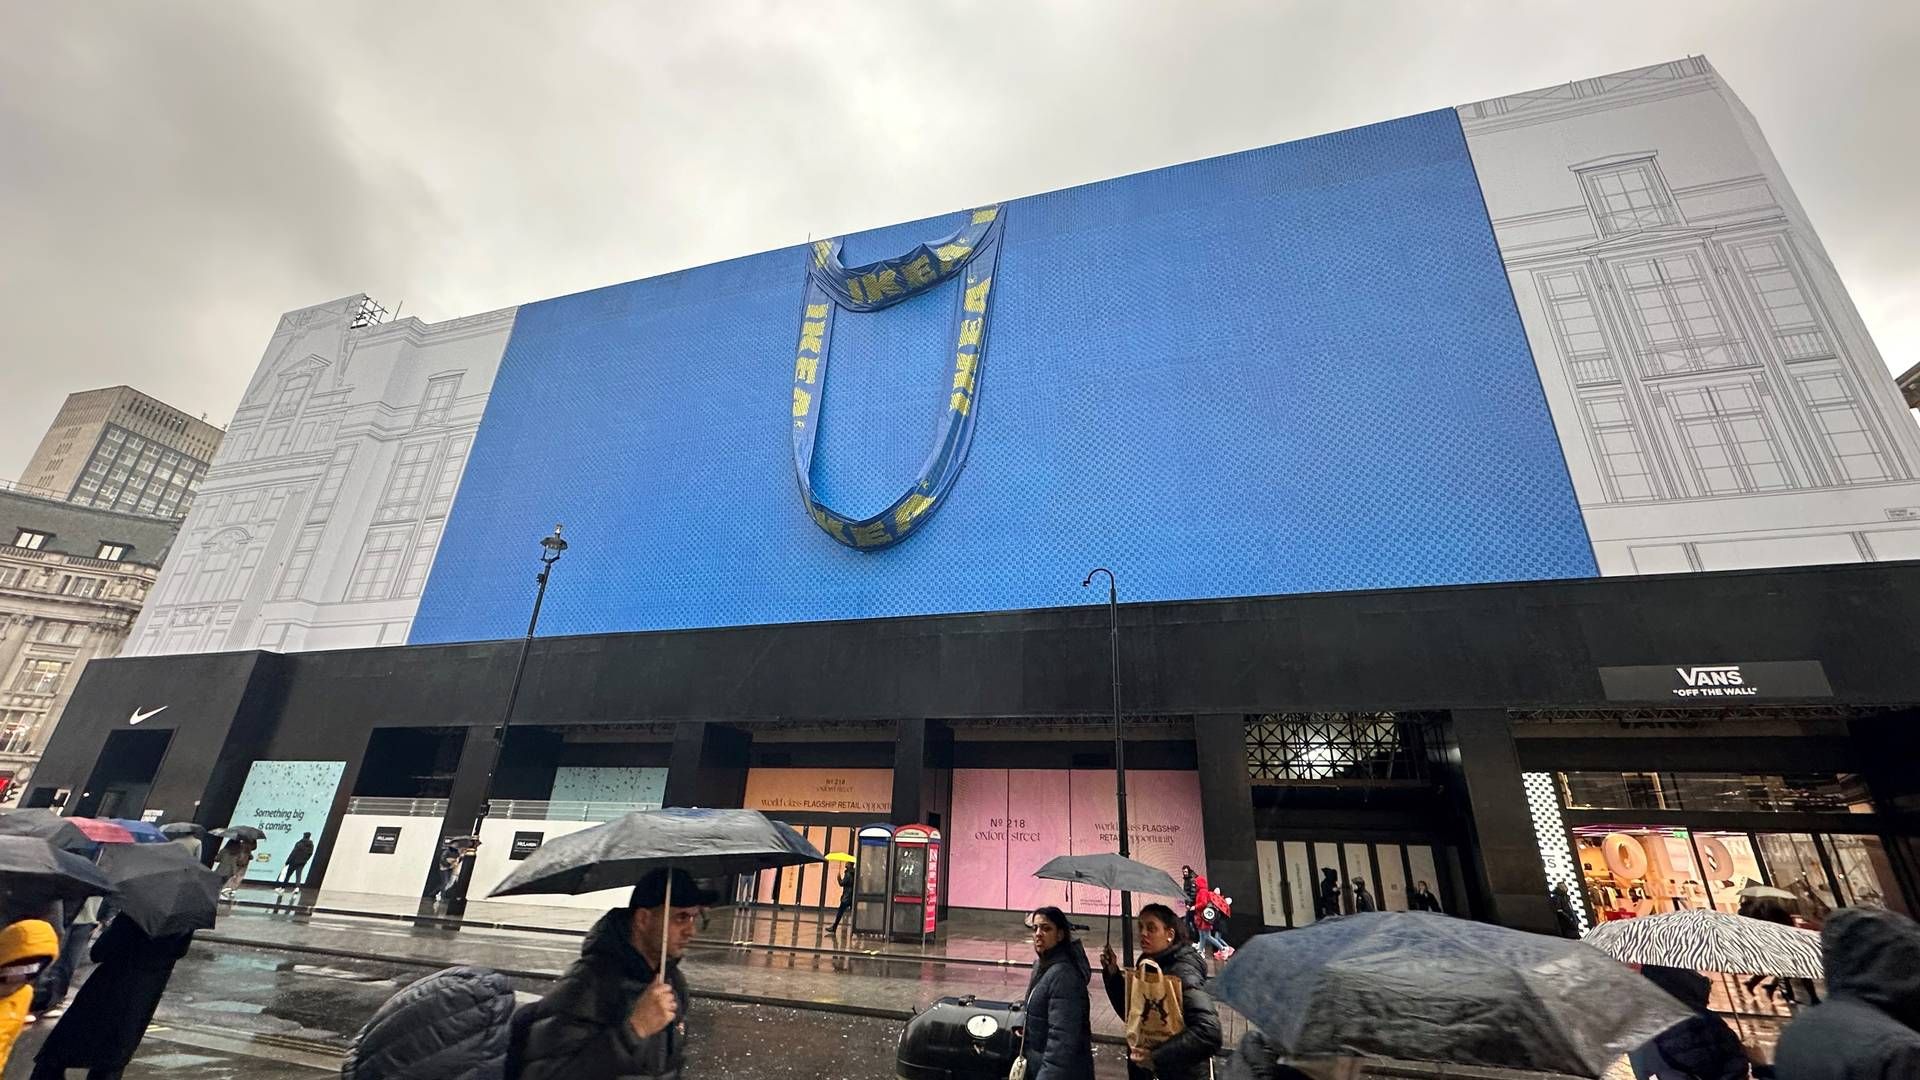 KOMMER SNART: Møbelkjeden Ikea åpner ny butikk i hjertet av London, og driver allerede med en svært synlig markedsføring av det nye byvarehuset. | Foto: Gøril Huse / HandelsWatch